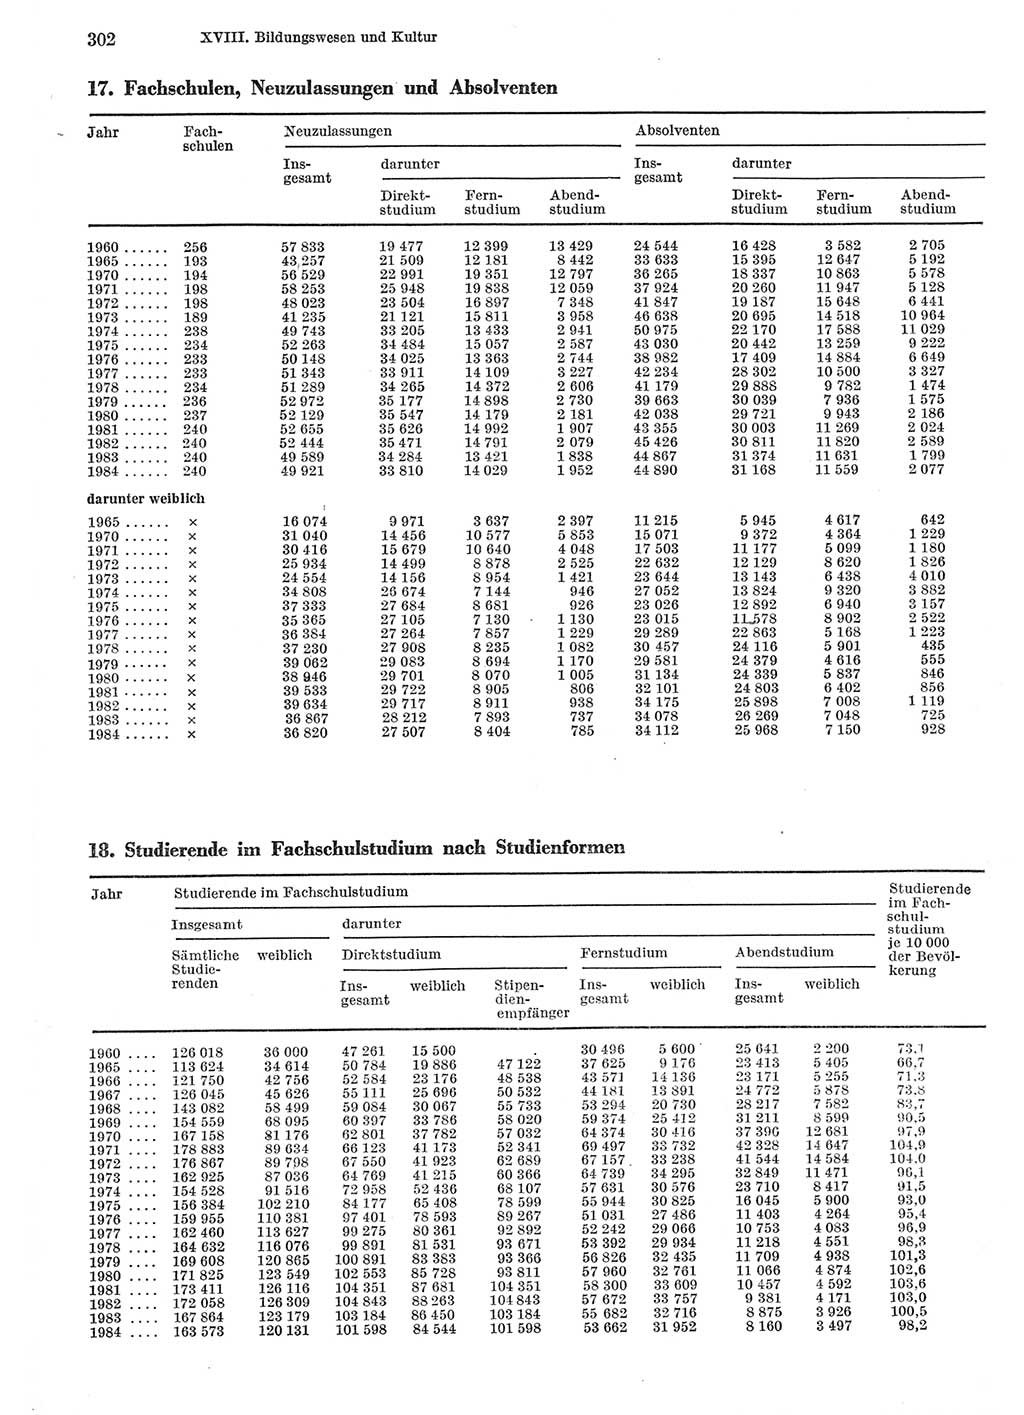 Statistisches Jahrbuch der Deutschen Demokratischen Republik (DDR) 1985, Seite 302 (Stat. Jb. DDR 1985, S. 302)